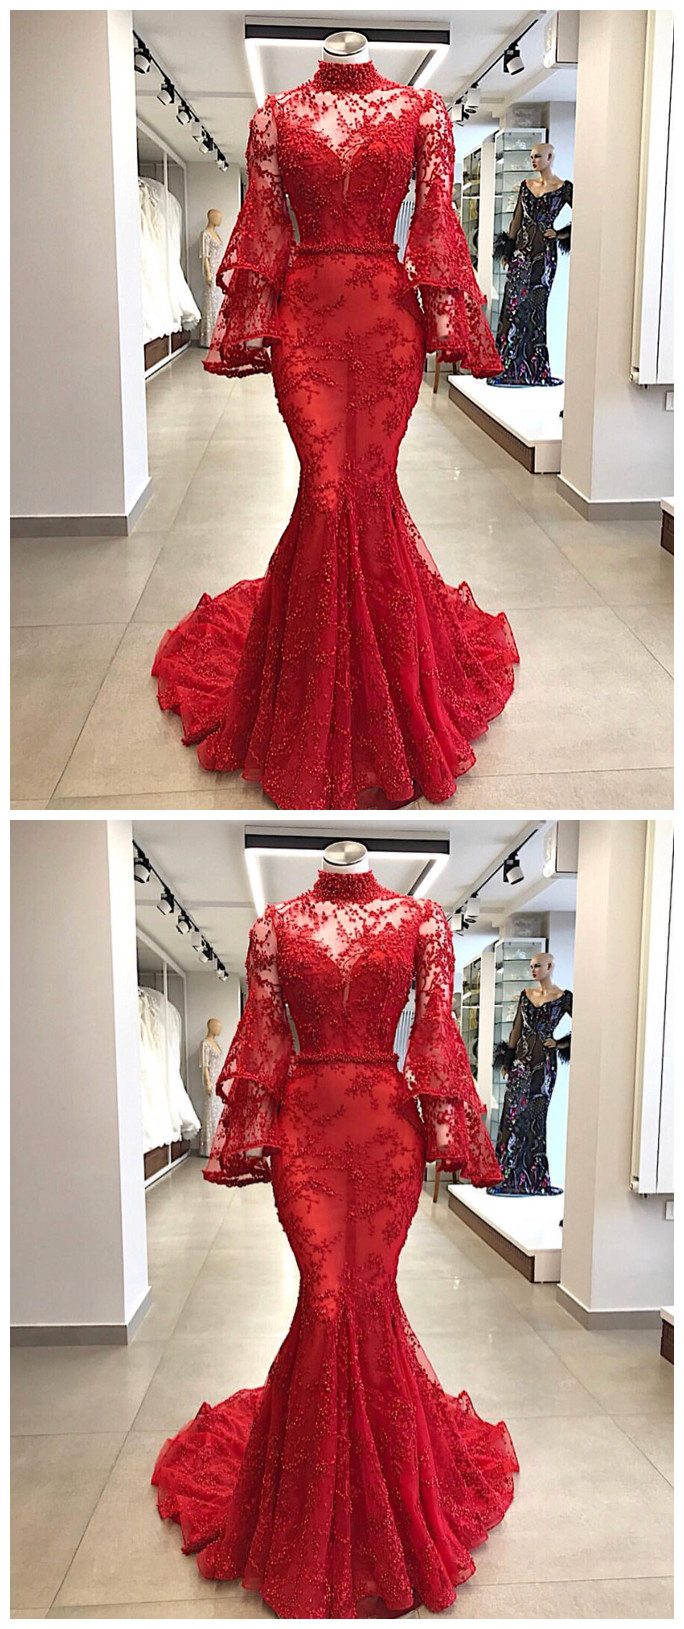 High Neck Evening Dress, Red Evening Dress, Mermaid Evening Dress, Evening Dress, Real Photo Evening Dress, Lace Applique Evening Dress,